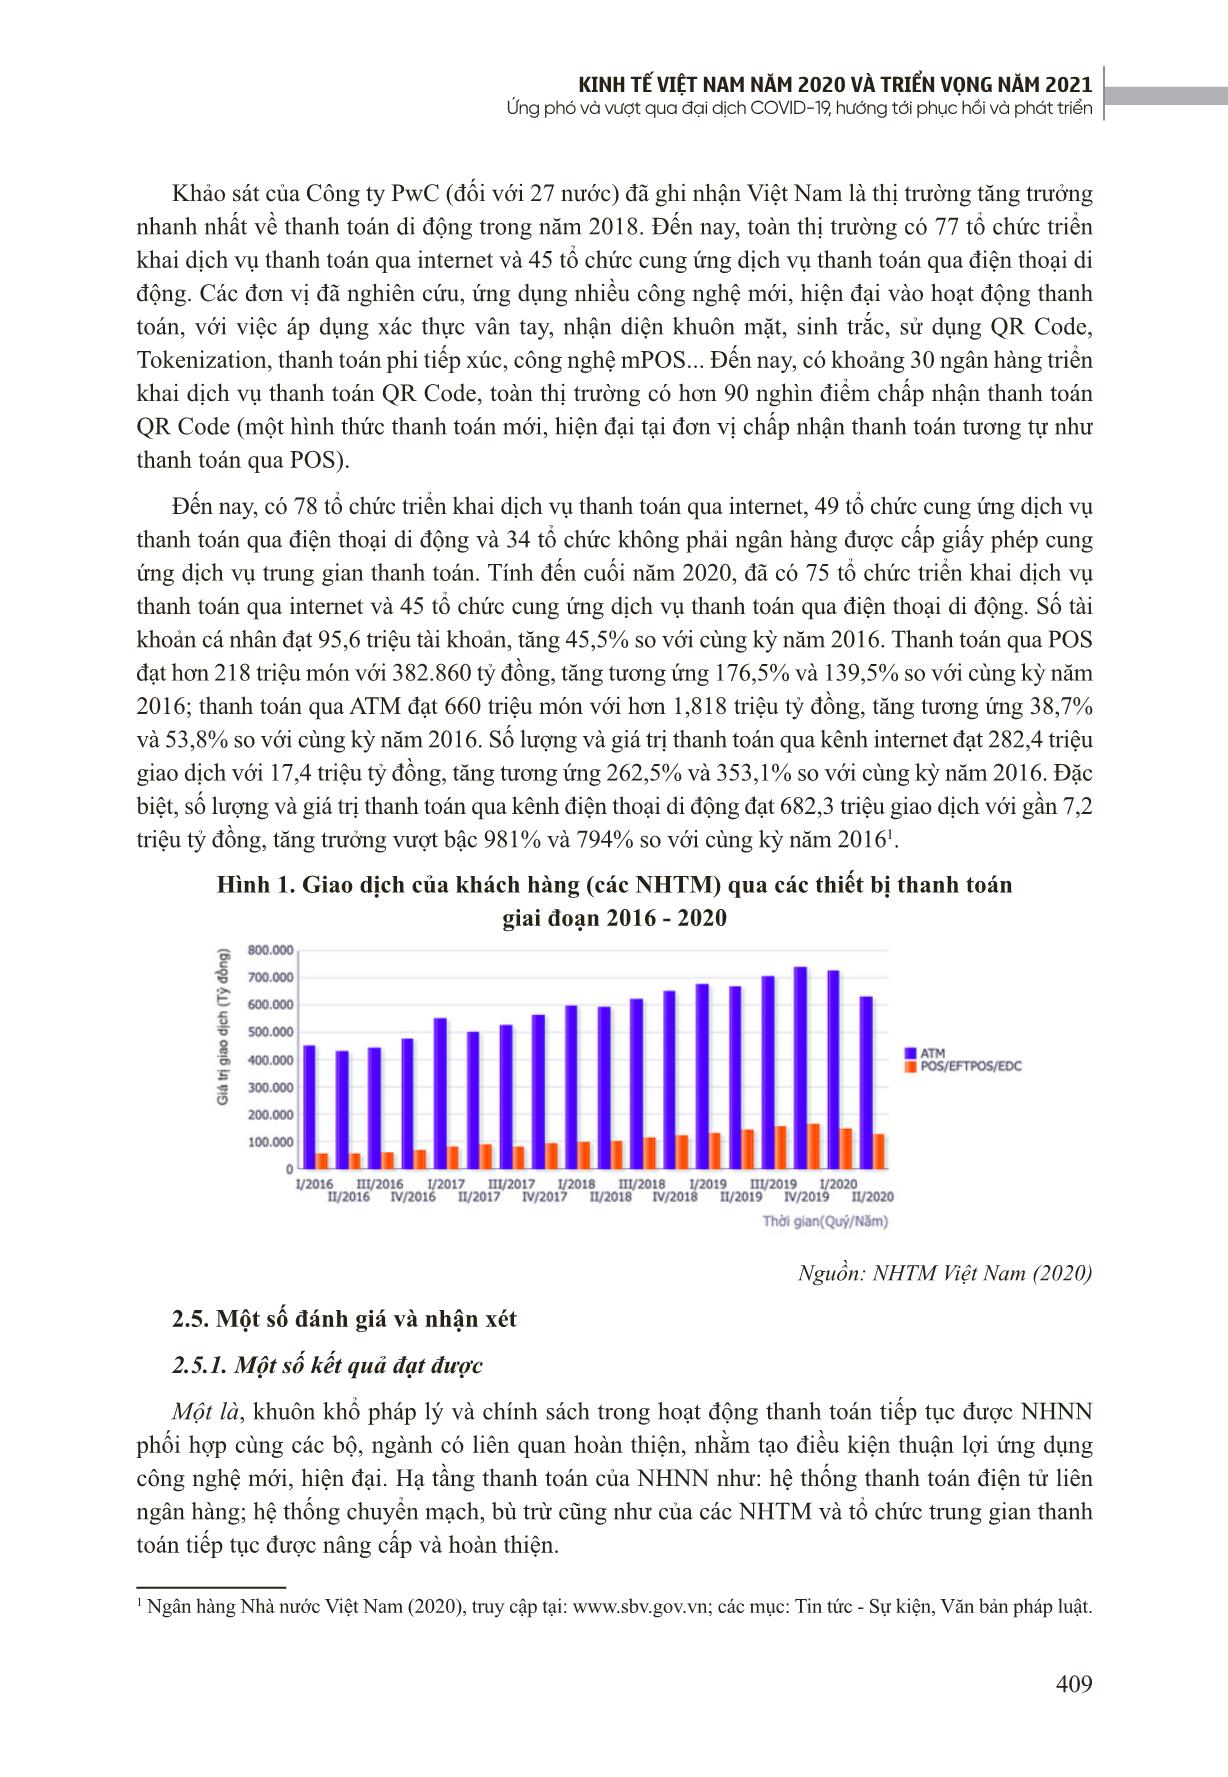 Xu hướng phát triển số hóa và thanh toán điện tử của hệ thống ngân hàng thương mại Việt Nam ứng phó với đại dịch Covid-19 trang 6